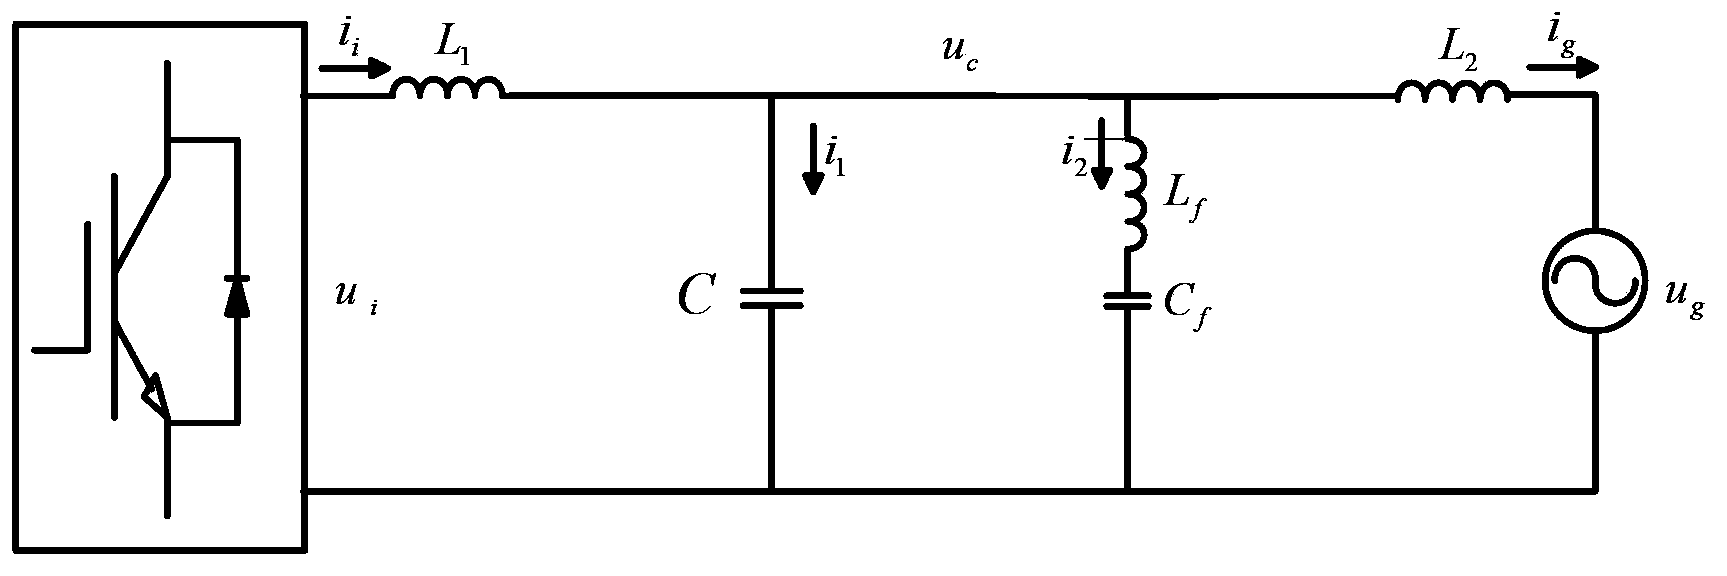 Parameter design method of grid-connected inverter LLCL filter